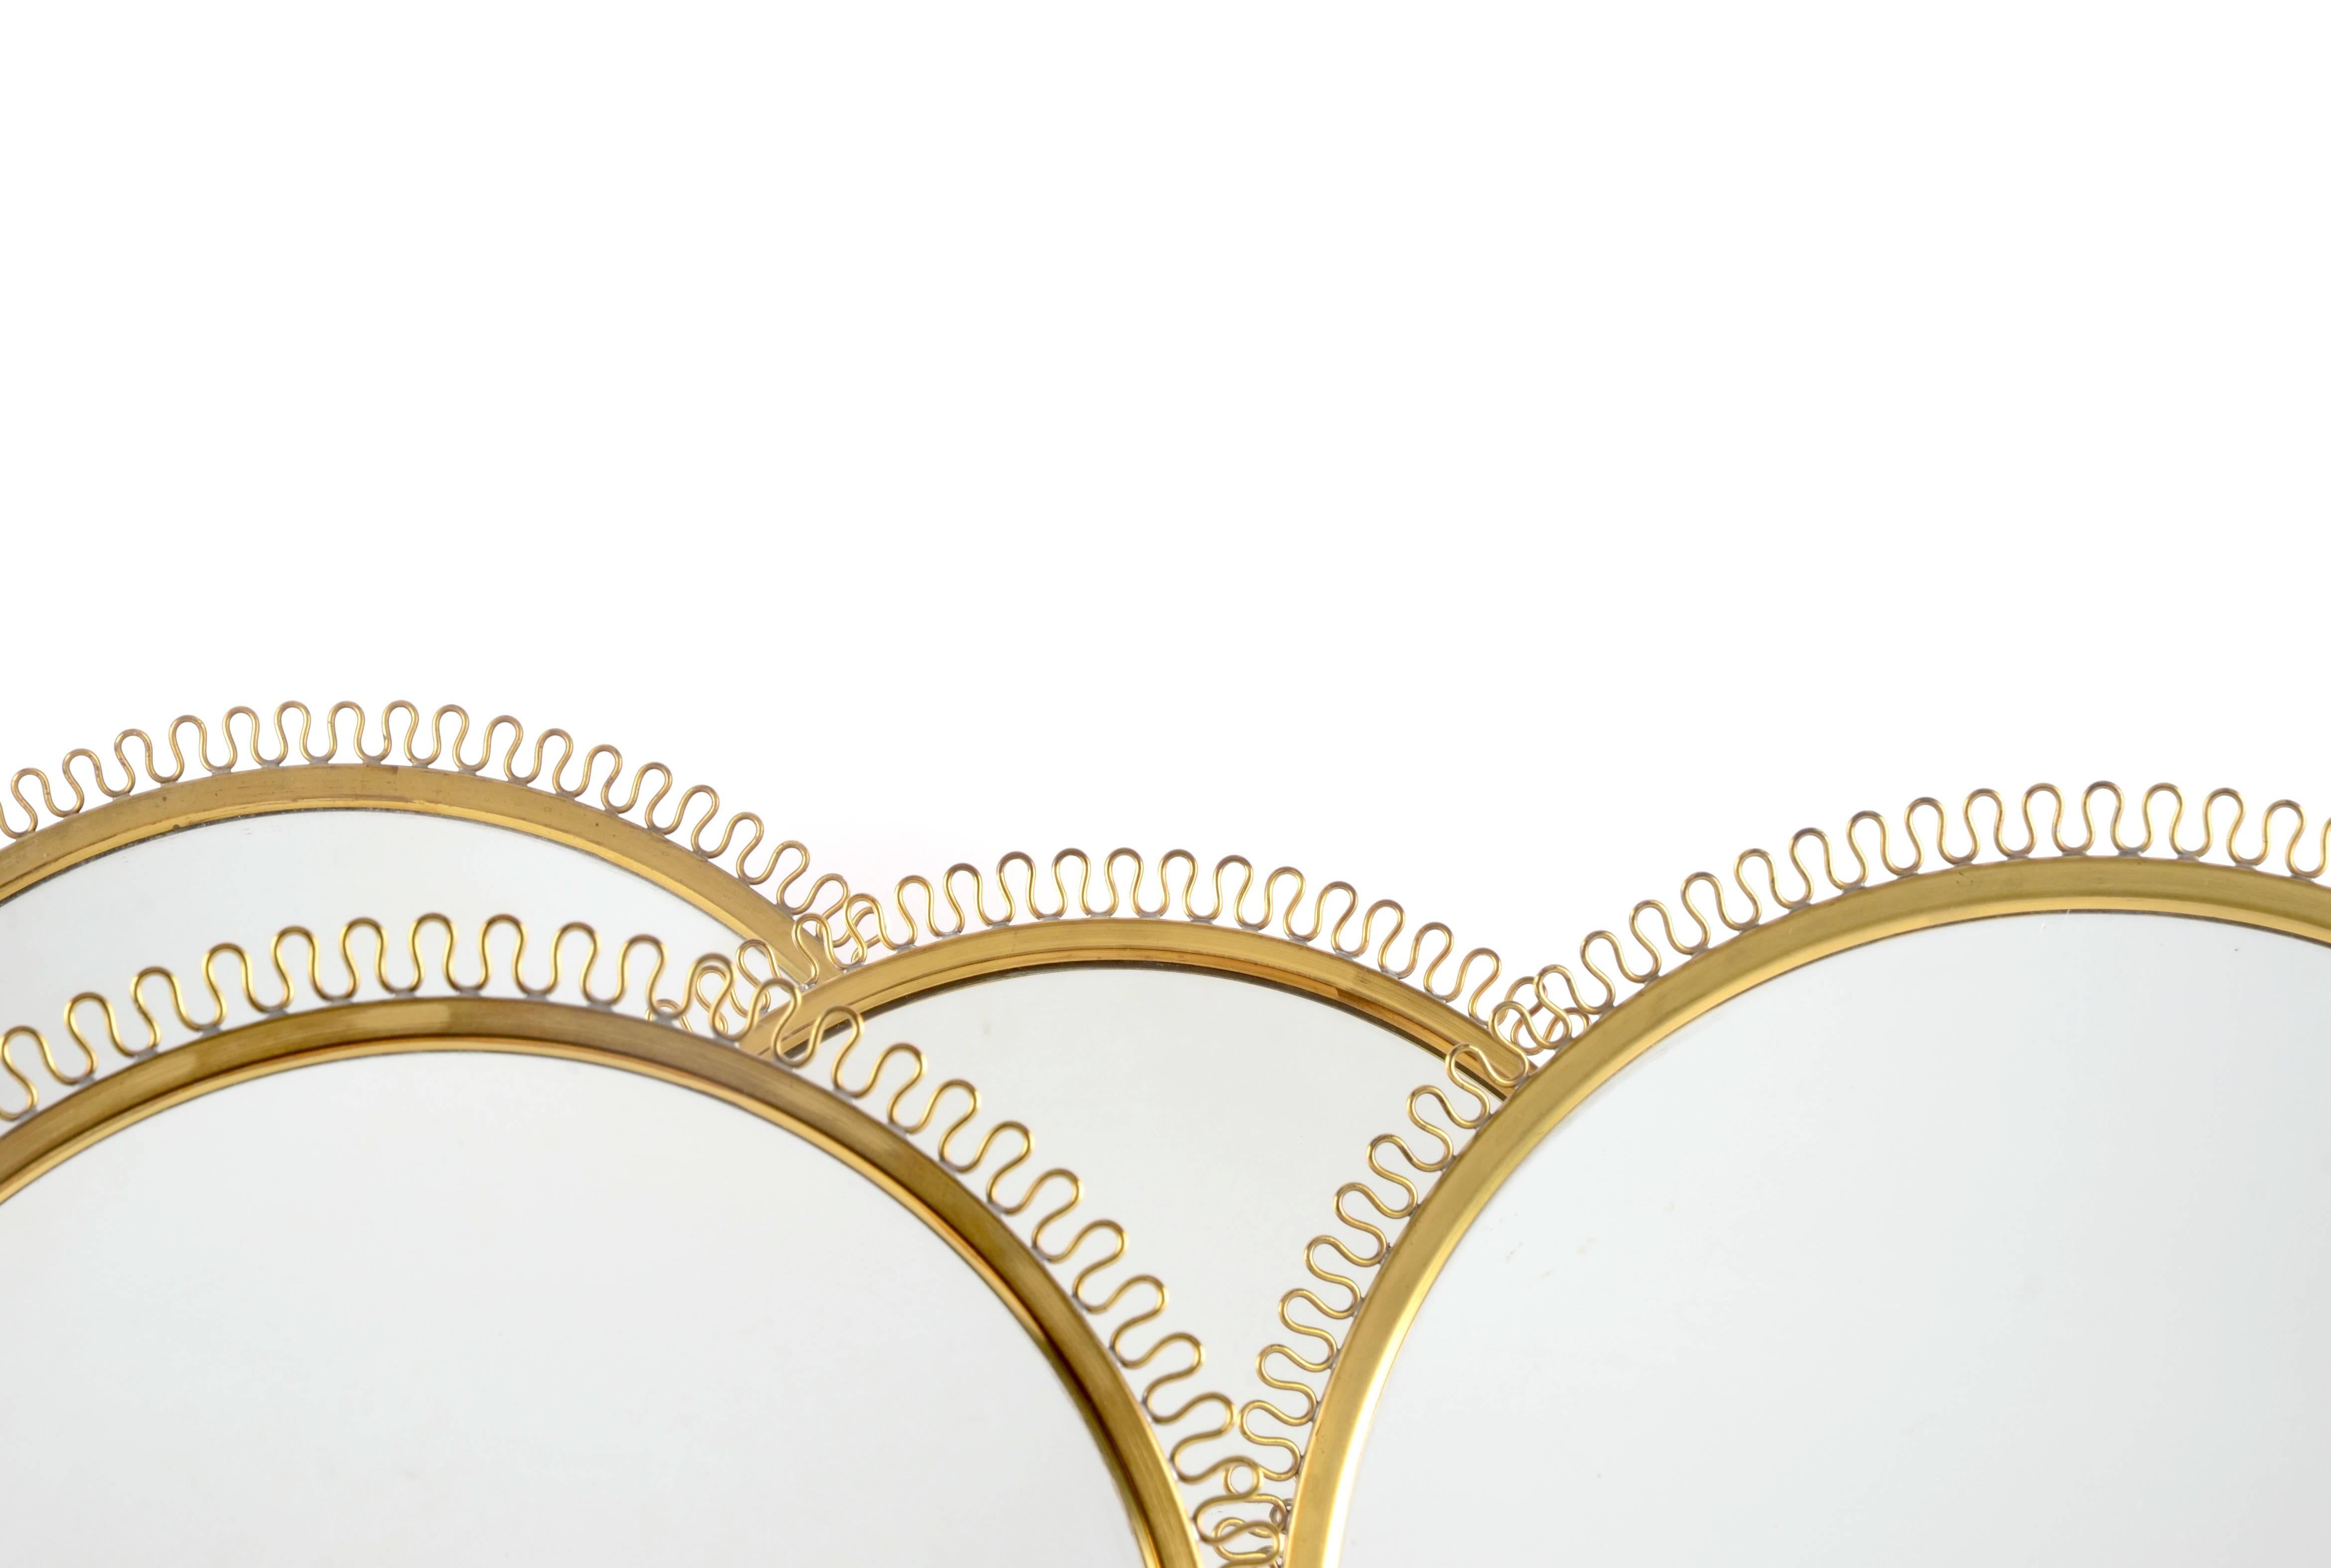 Tischspiegel aus Messing, entworfen von Josef Frank für die Firma Svenskt Tenn, Schweden, 1950er Jahre.

Vier Stück verfügbar, zwei verschiedene Größen.

Maße: Höhe 47, Durchmesser 38 cm 3 500 USD
Höhe 45, Durchmesser 33 cm 3 800 USD.
 